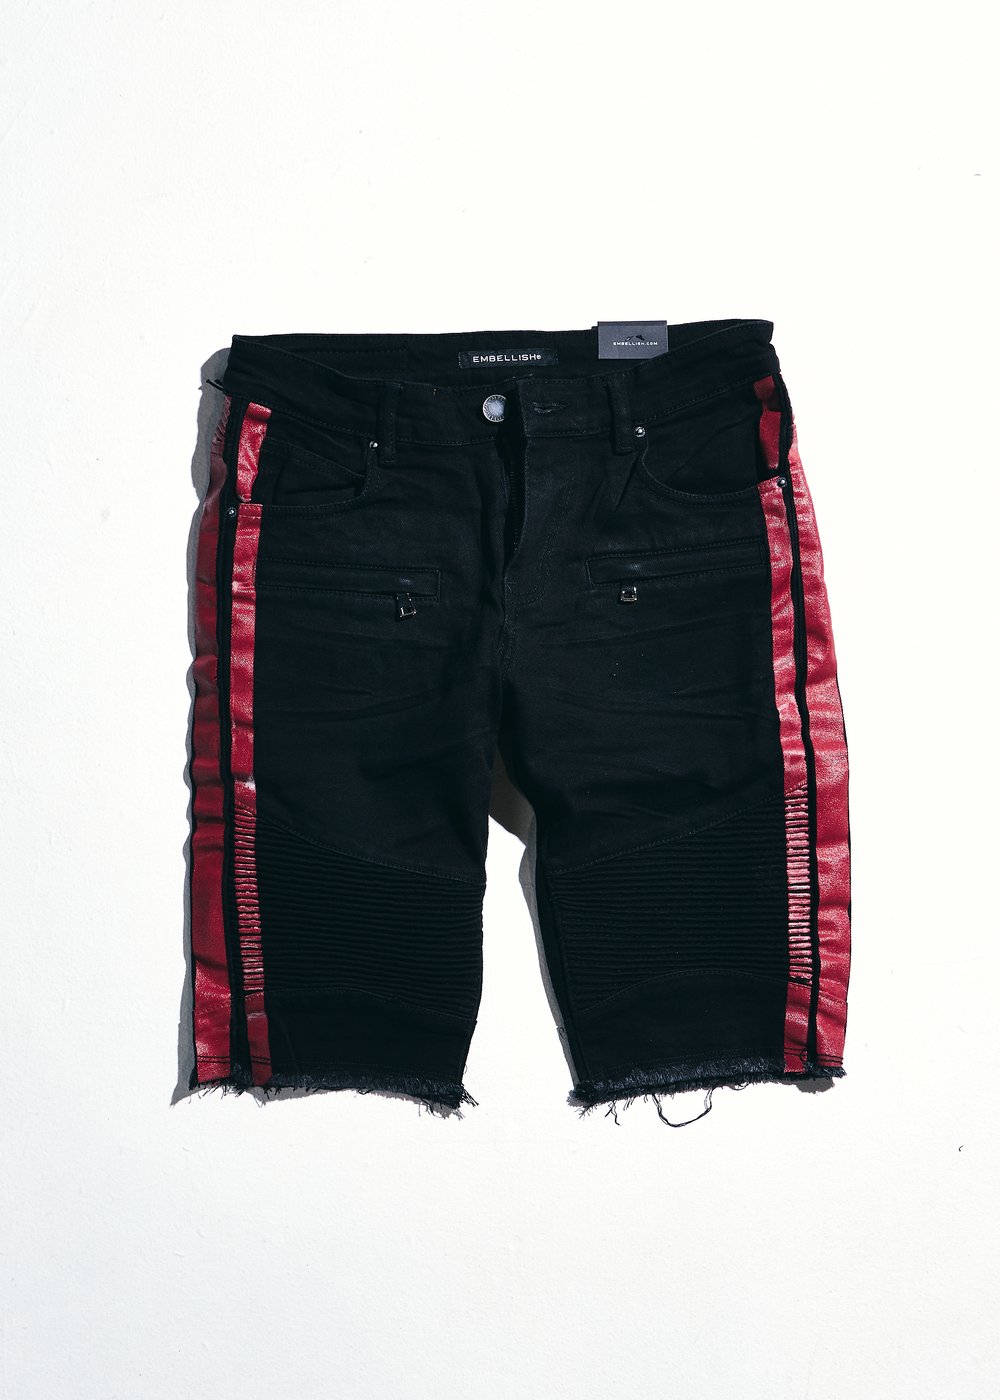 Embellish-Bolt Biker Shorts-Red/Black